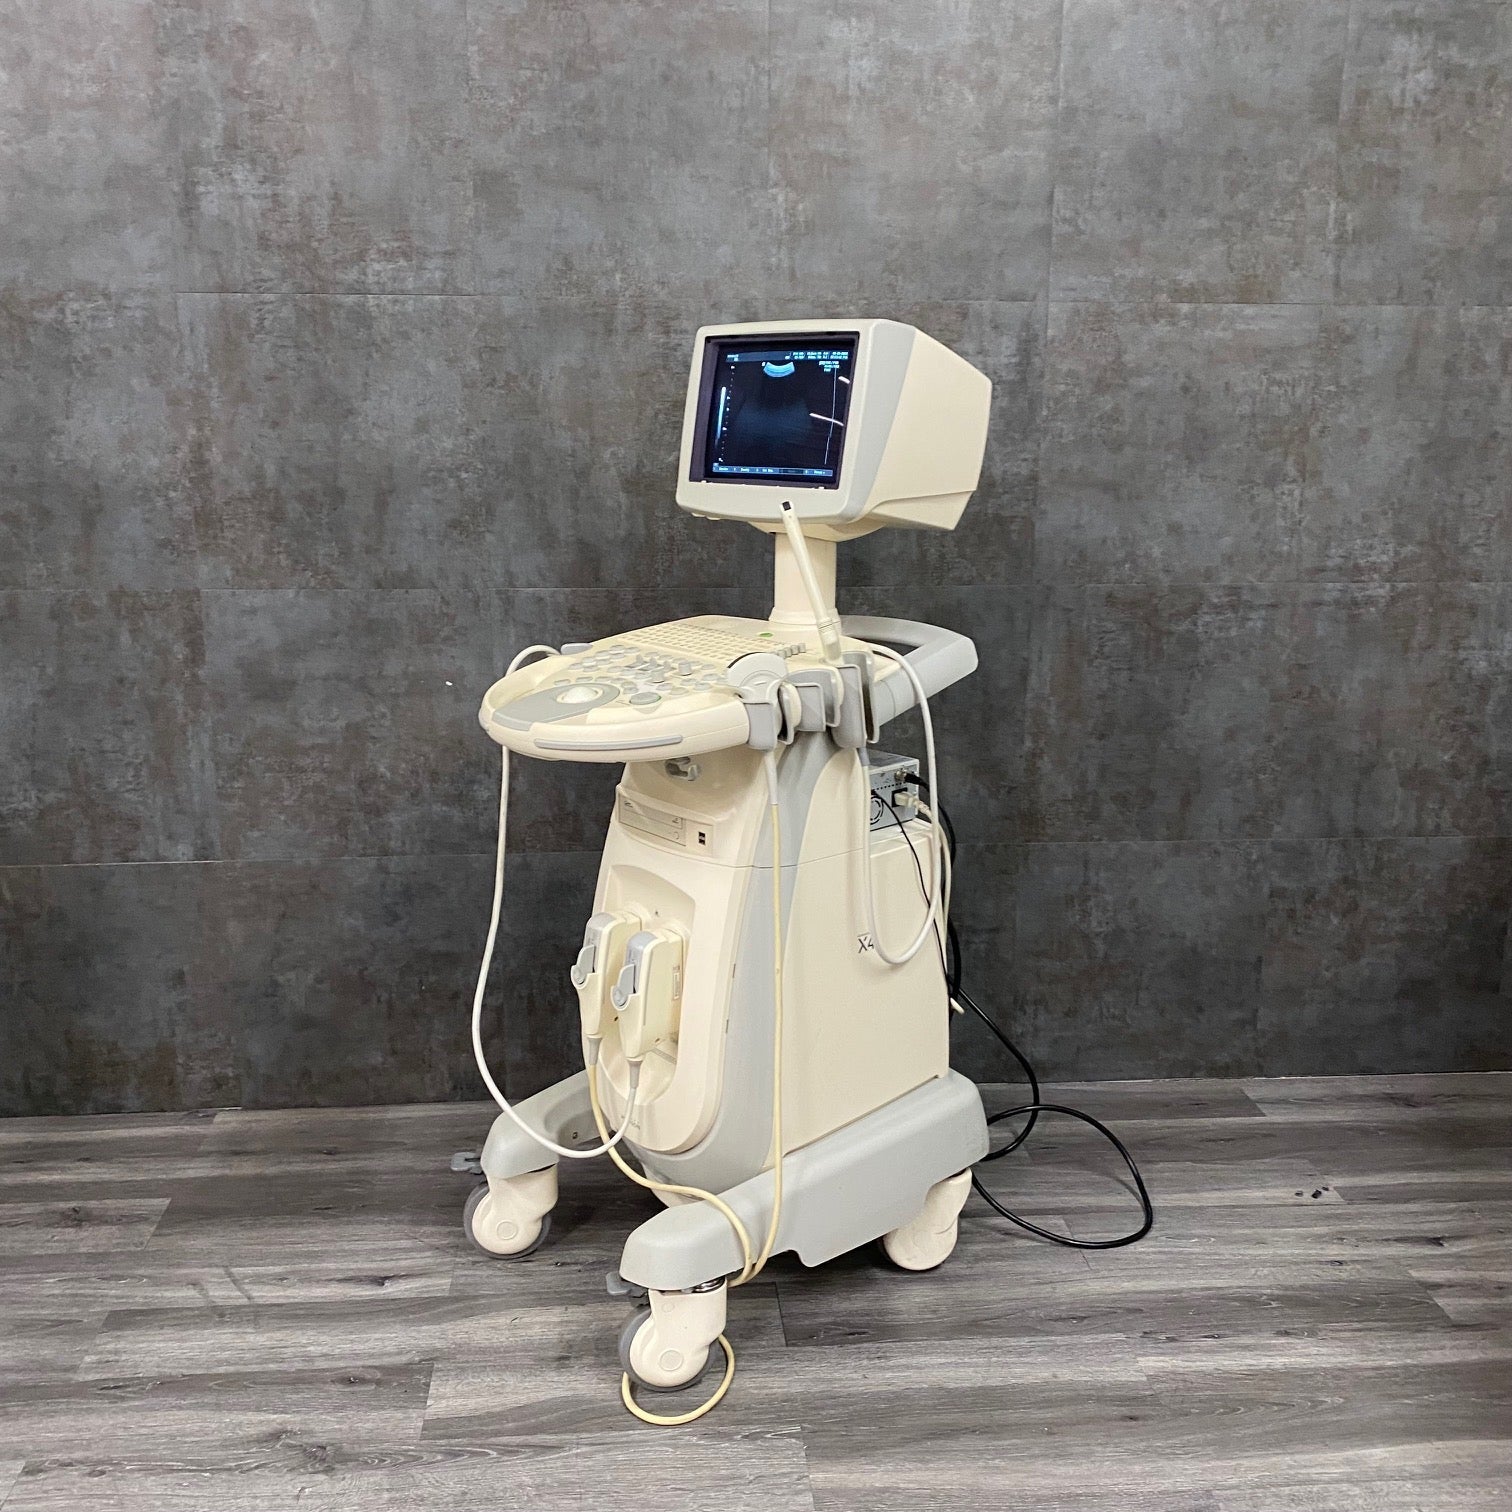 Medison SonoAce X4 Ultrasound Unit